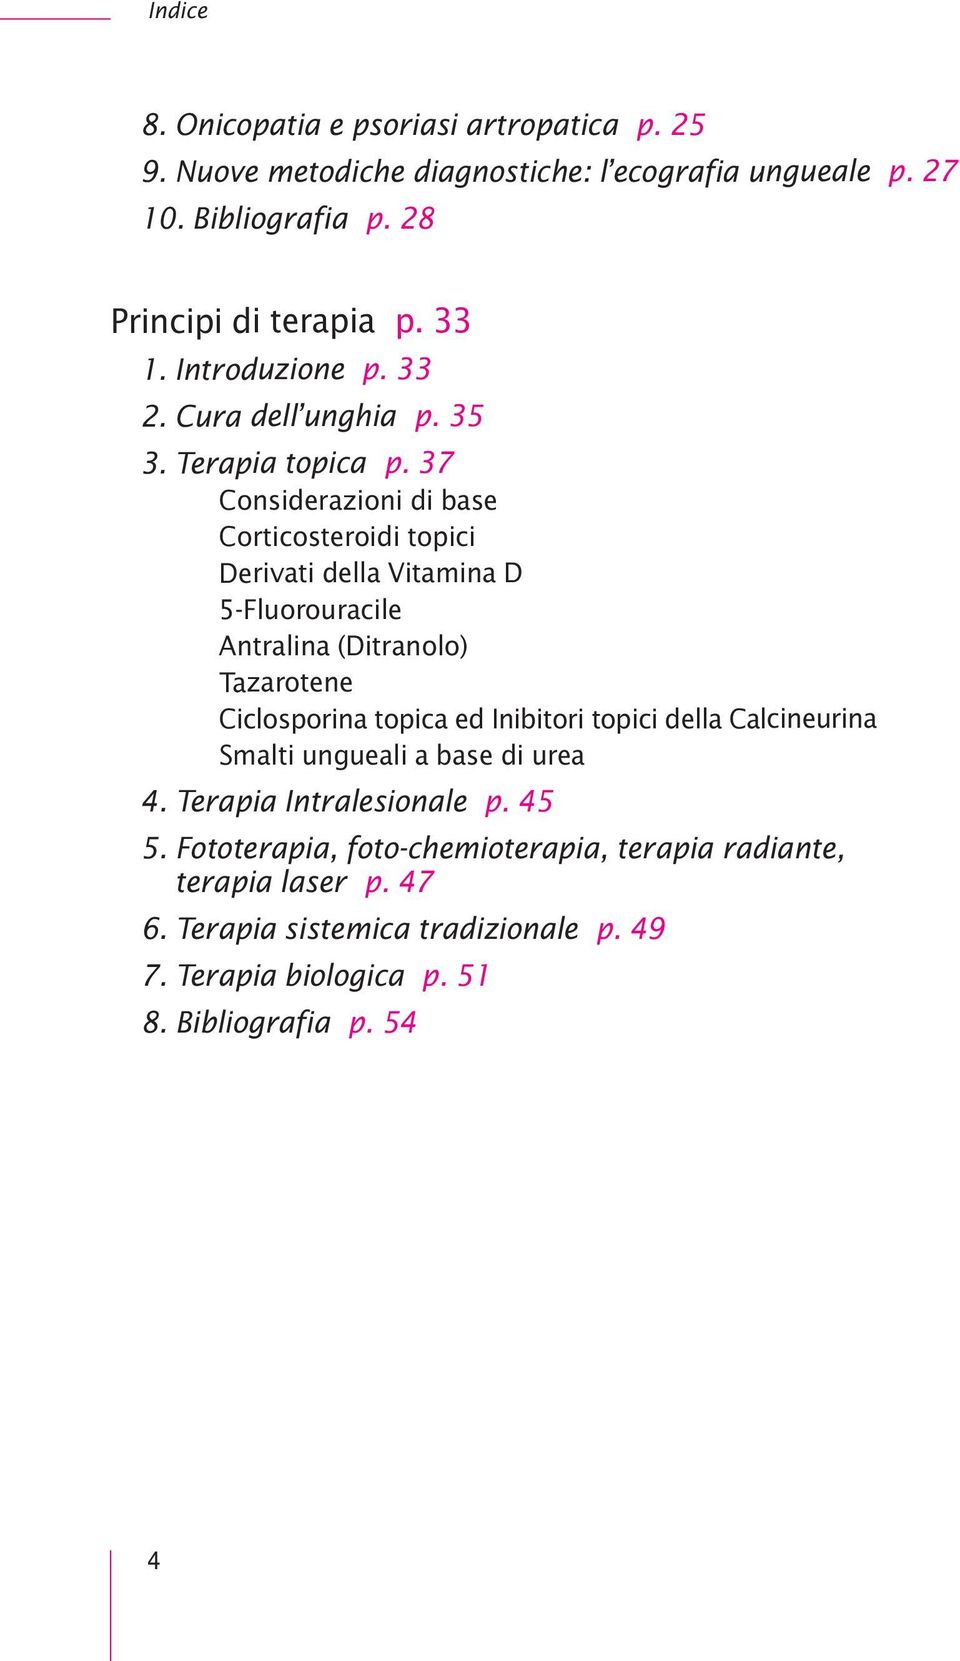 37 Considerazioni di base Corticosteroidi topici Derivati della Vitamina D 5-Fluorouracile Antralina (Ditranolo) Tazarotene Ciclosporina topica ed Inibitori